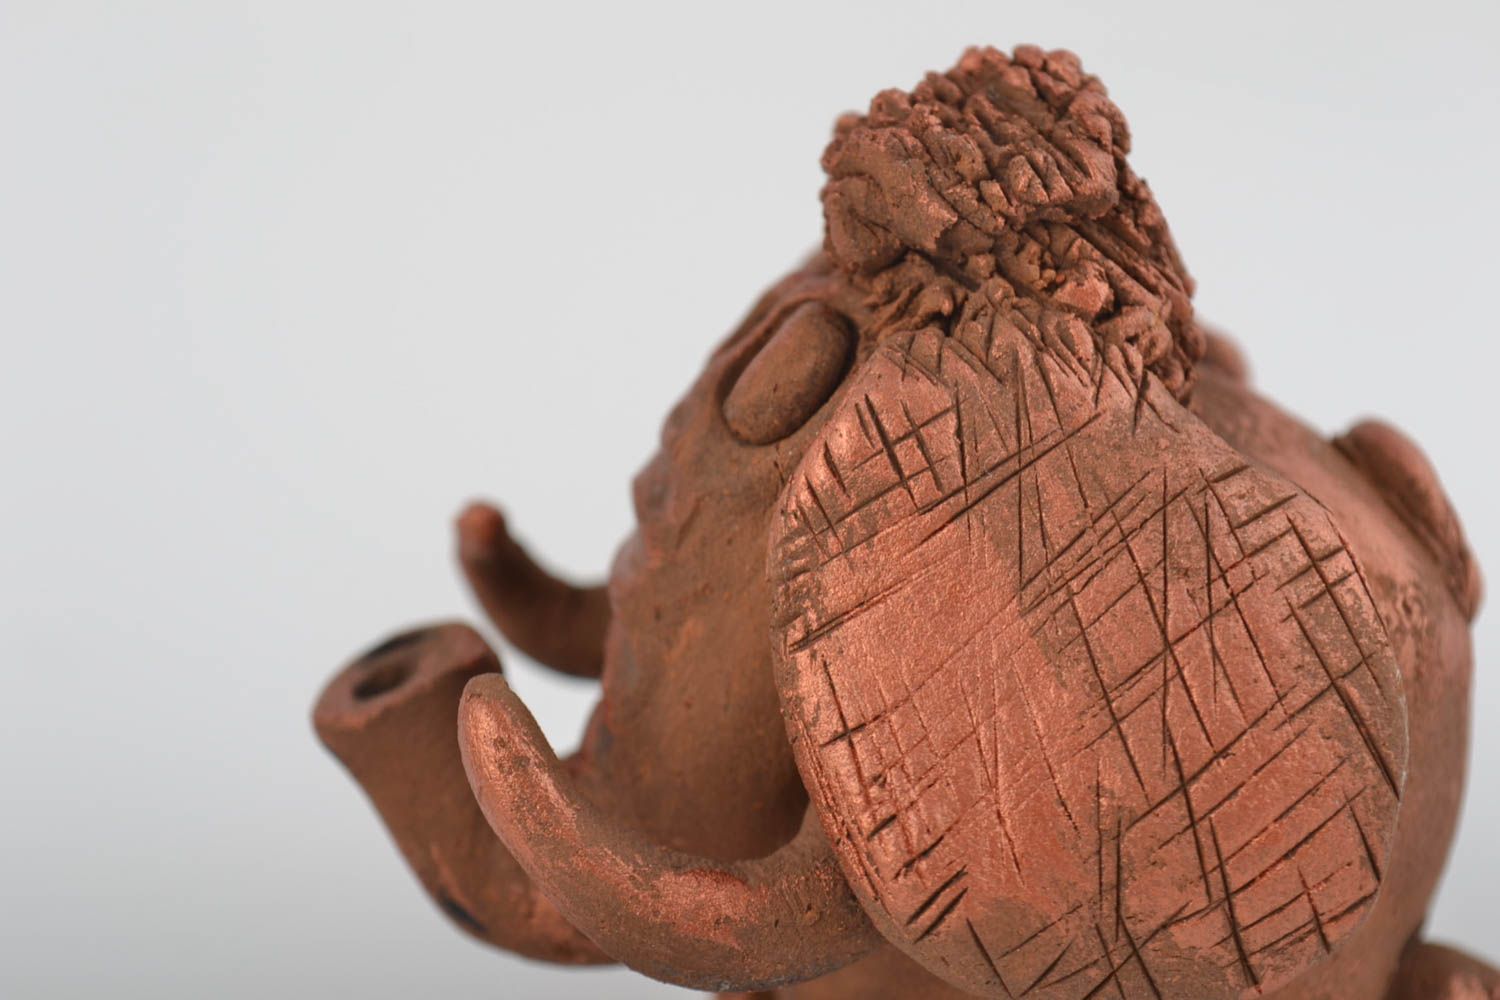 Kleine Keramik Statuette Elefant handmade dekorativ mit Acrylfarben bemalt schön foto 4